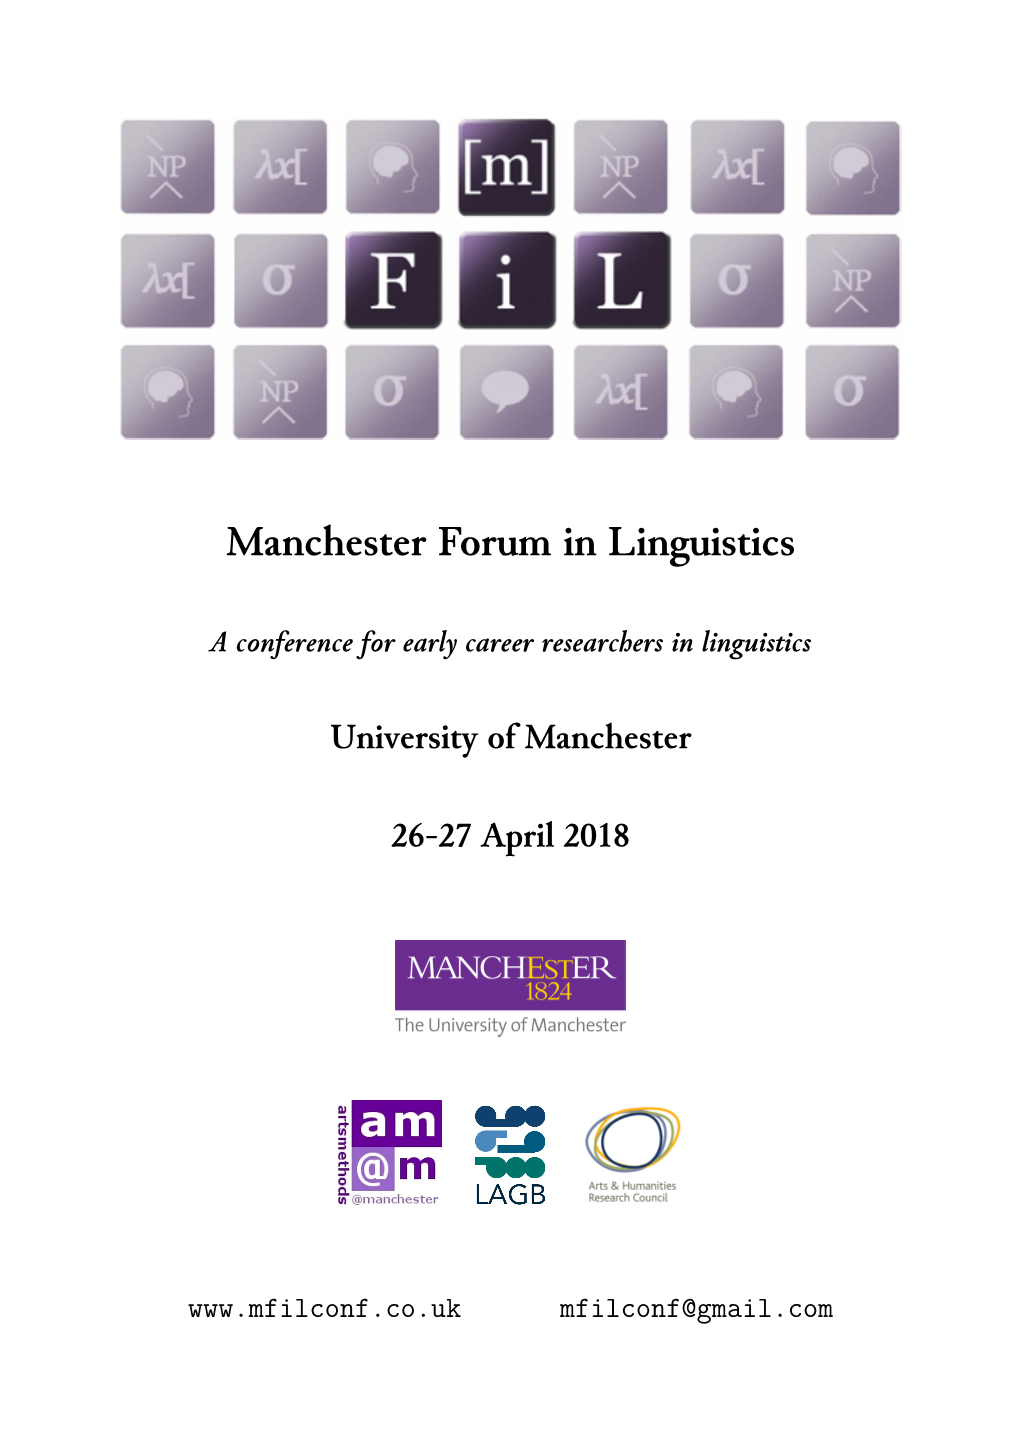 Manchester Forum in Linguistics 2018